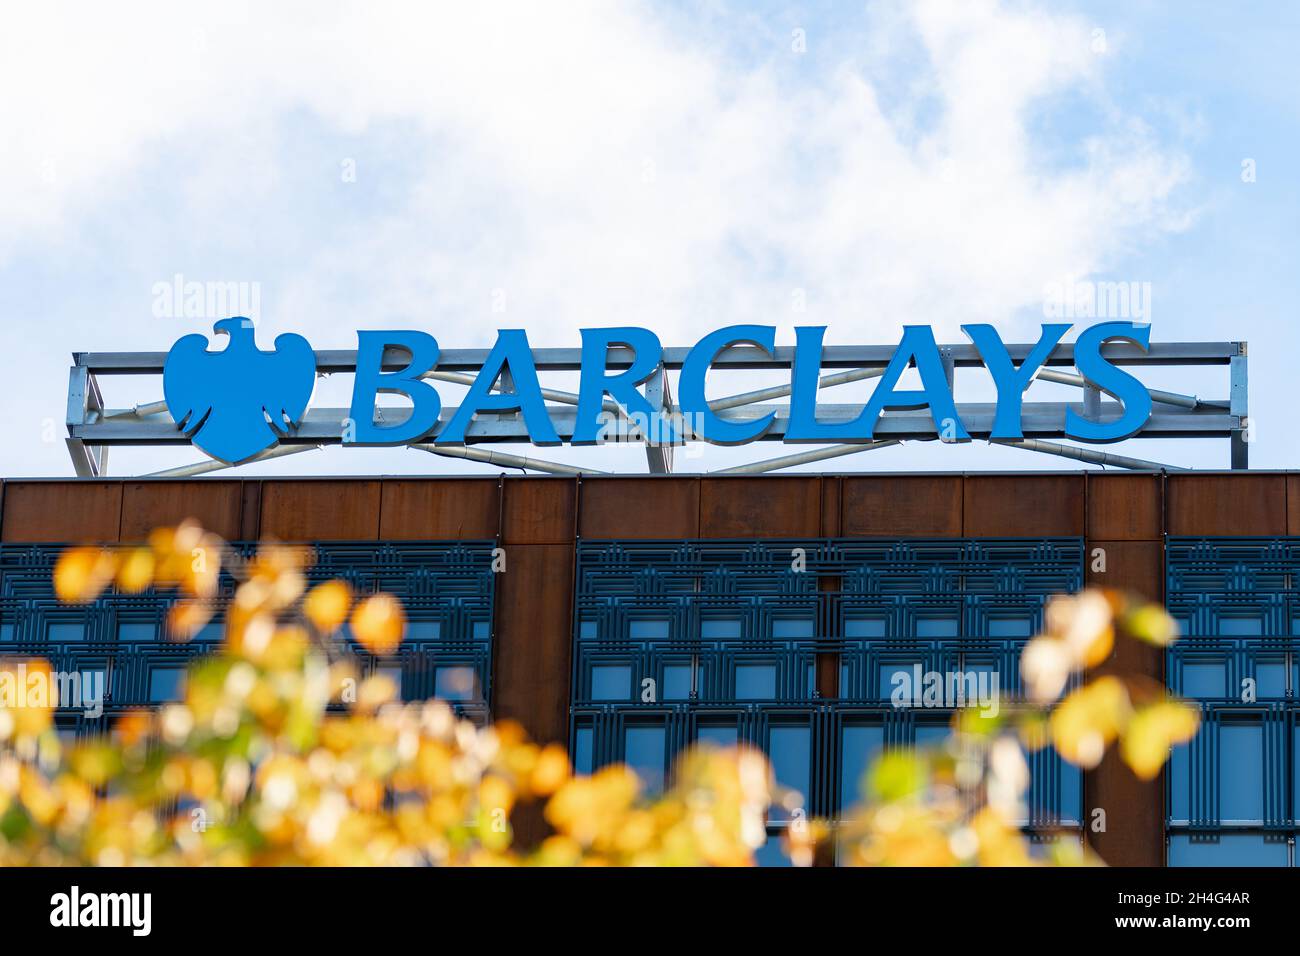 Panneau de la banque Barclays sur le nouveau campus de Barclays Glasgow à Tradeston, Glasgow Banque D'Images